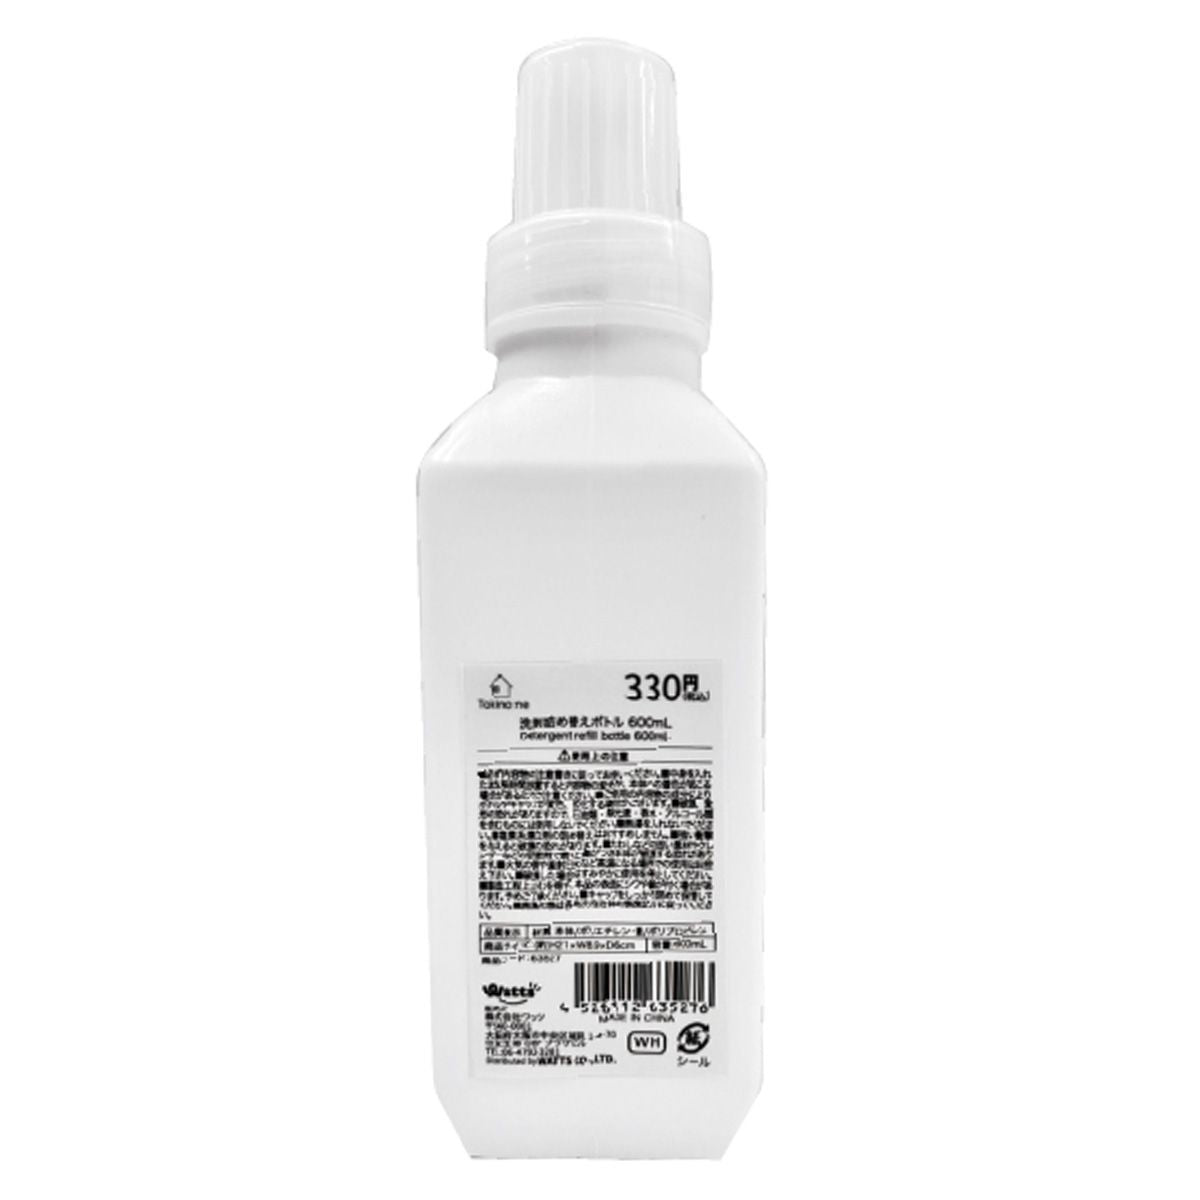 詰め替え容器 洗濯洗剤ボトル Tokinone PB. 洗剤詰め替えボトル 600ml ホワイト 063527